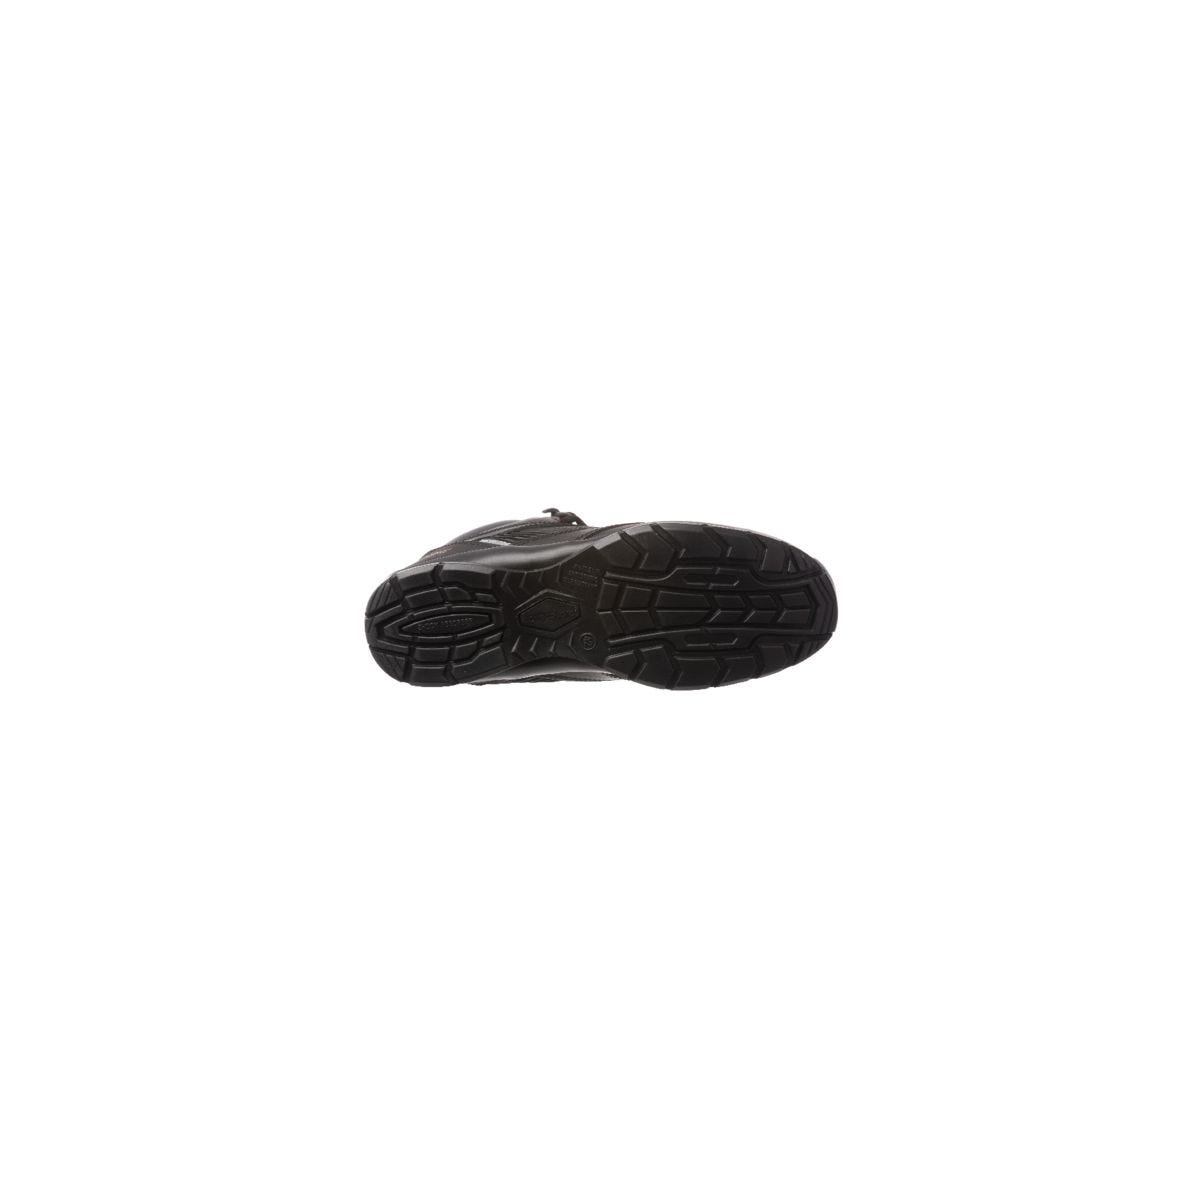 Chaussure de sécurité ASTROLITE S3 SRC haute noire composite - COVERGUARD - Taille 42 1